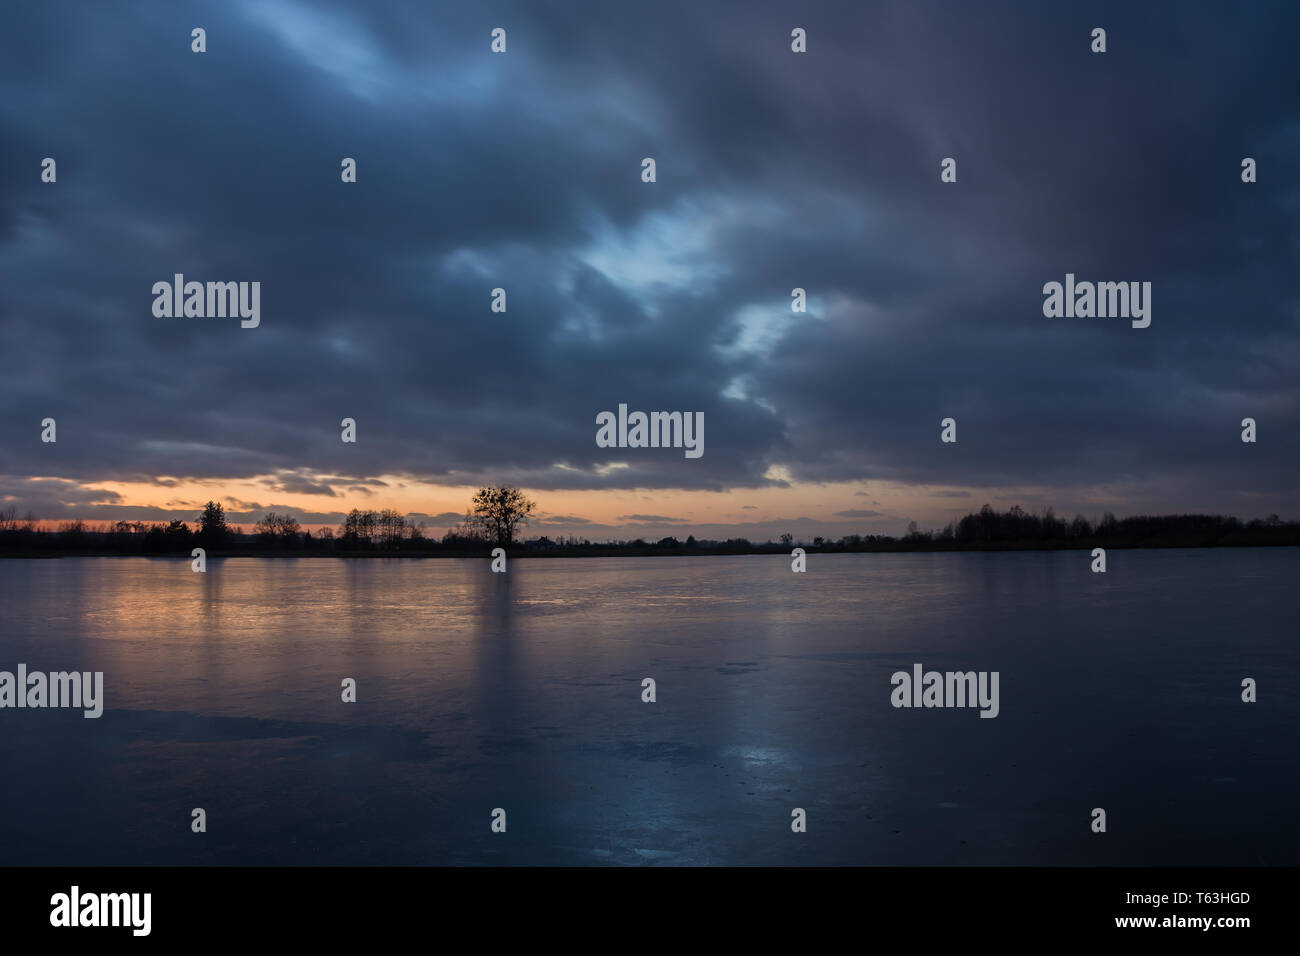 Bewölkter Himmel nach Sonnenuntergang, über einen gefrorenen See - Winter Abend anzeigen Stockfoto